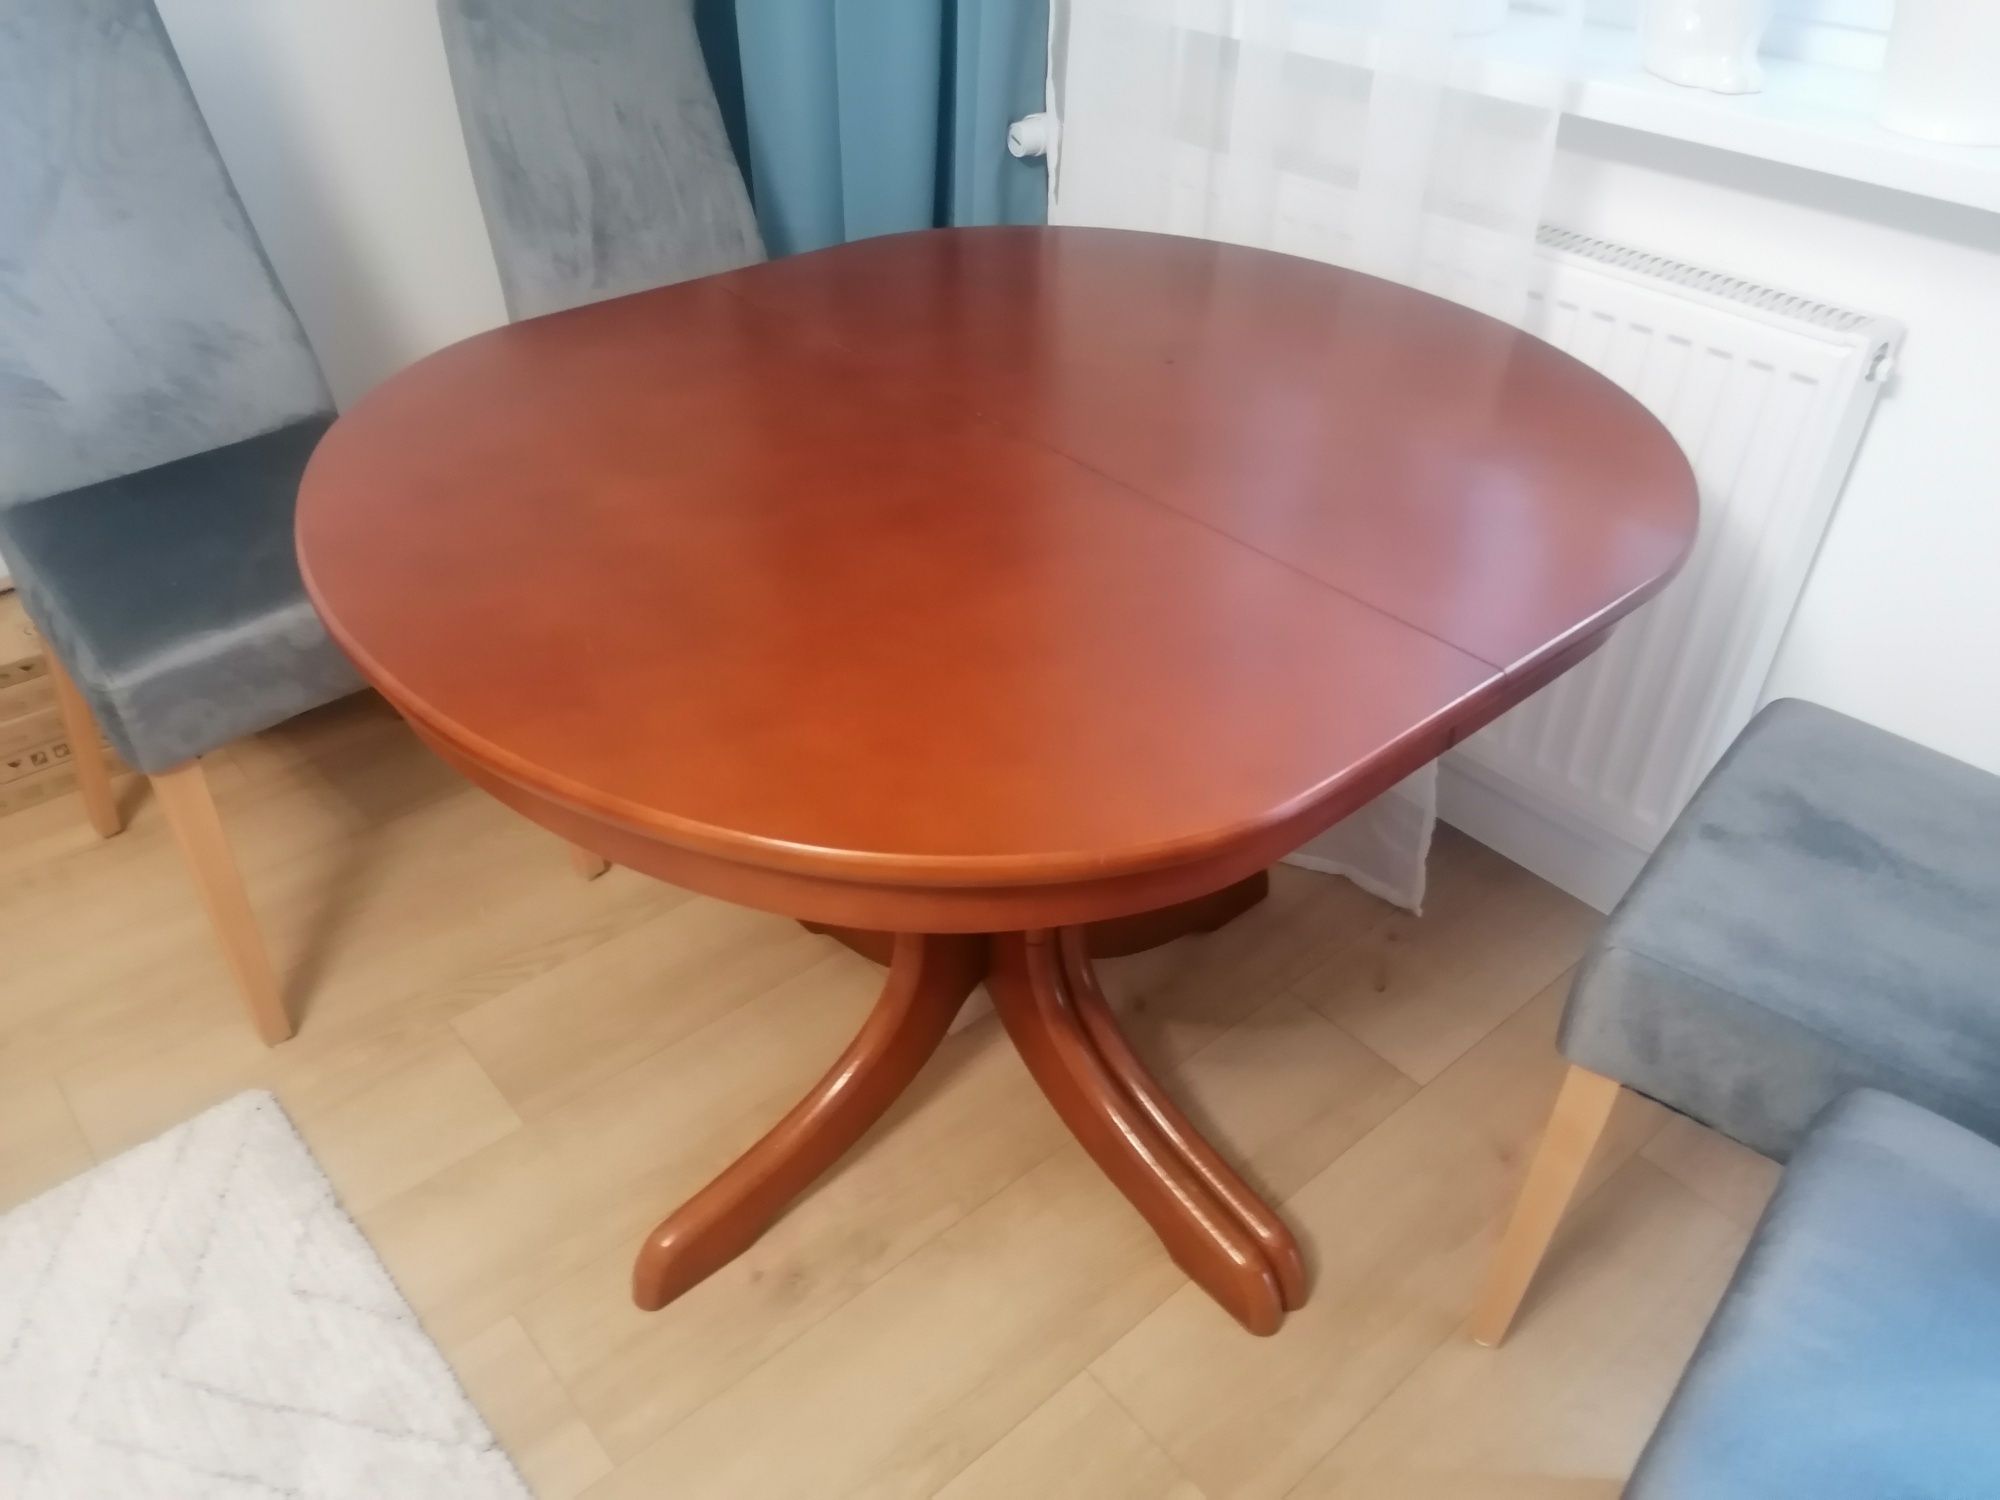 Stół rozkładany do 230 cm firmy Miro 75x92x106,146,186,226